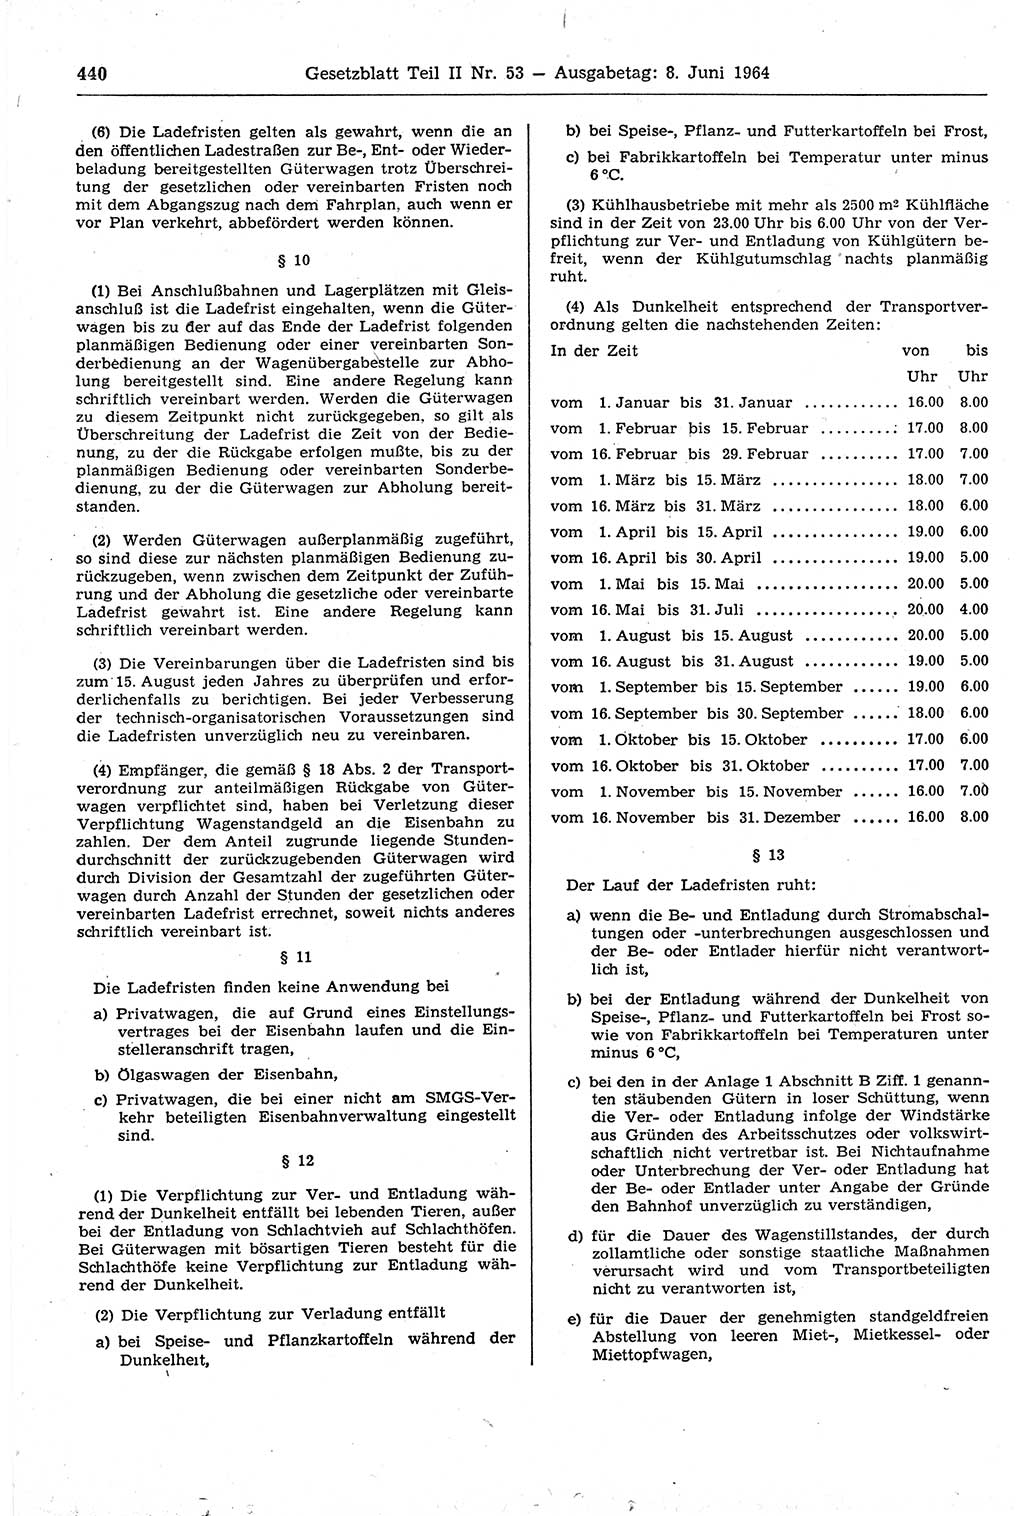 Gesetzblatt (GBl.) der Deutschen Demokratischen Republik (DDR) Teil ⅠⅠ 1964, Seite 440 (GBl. DDR ⅠⅠ 1964, S. 440)